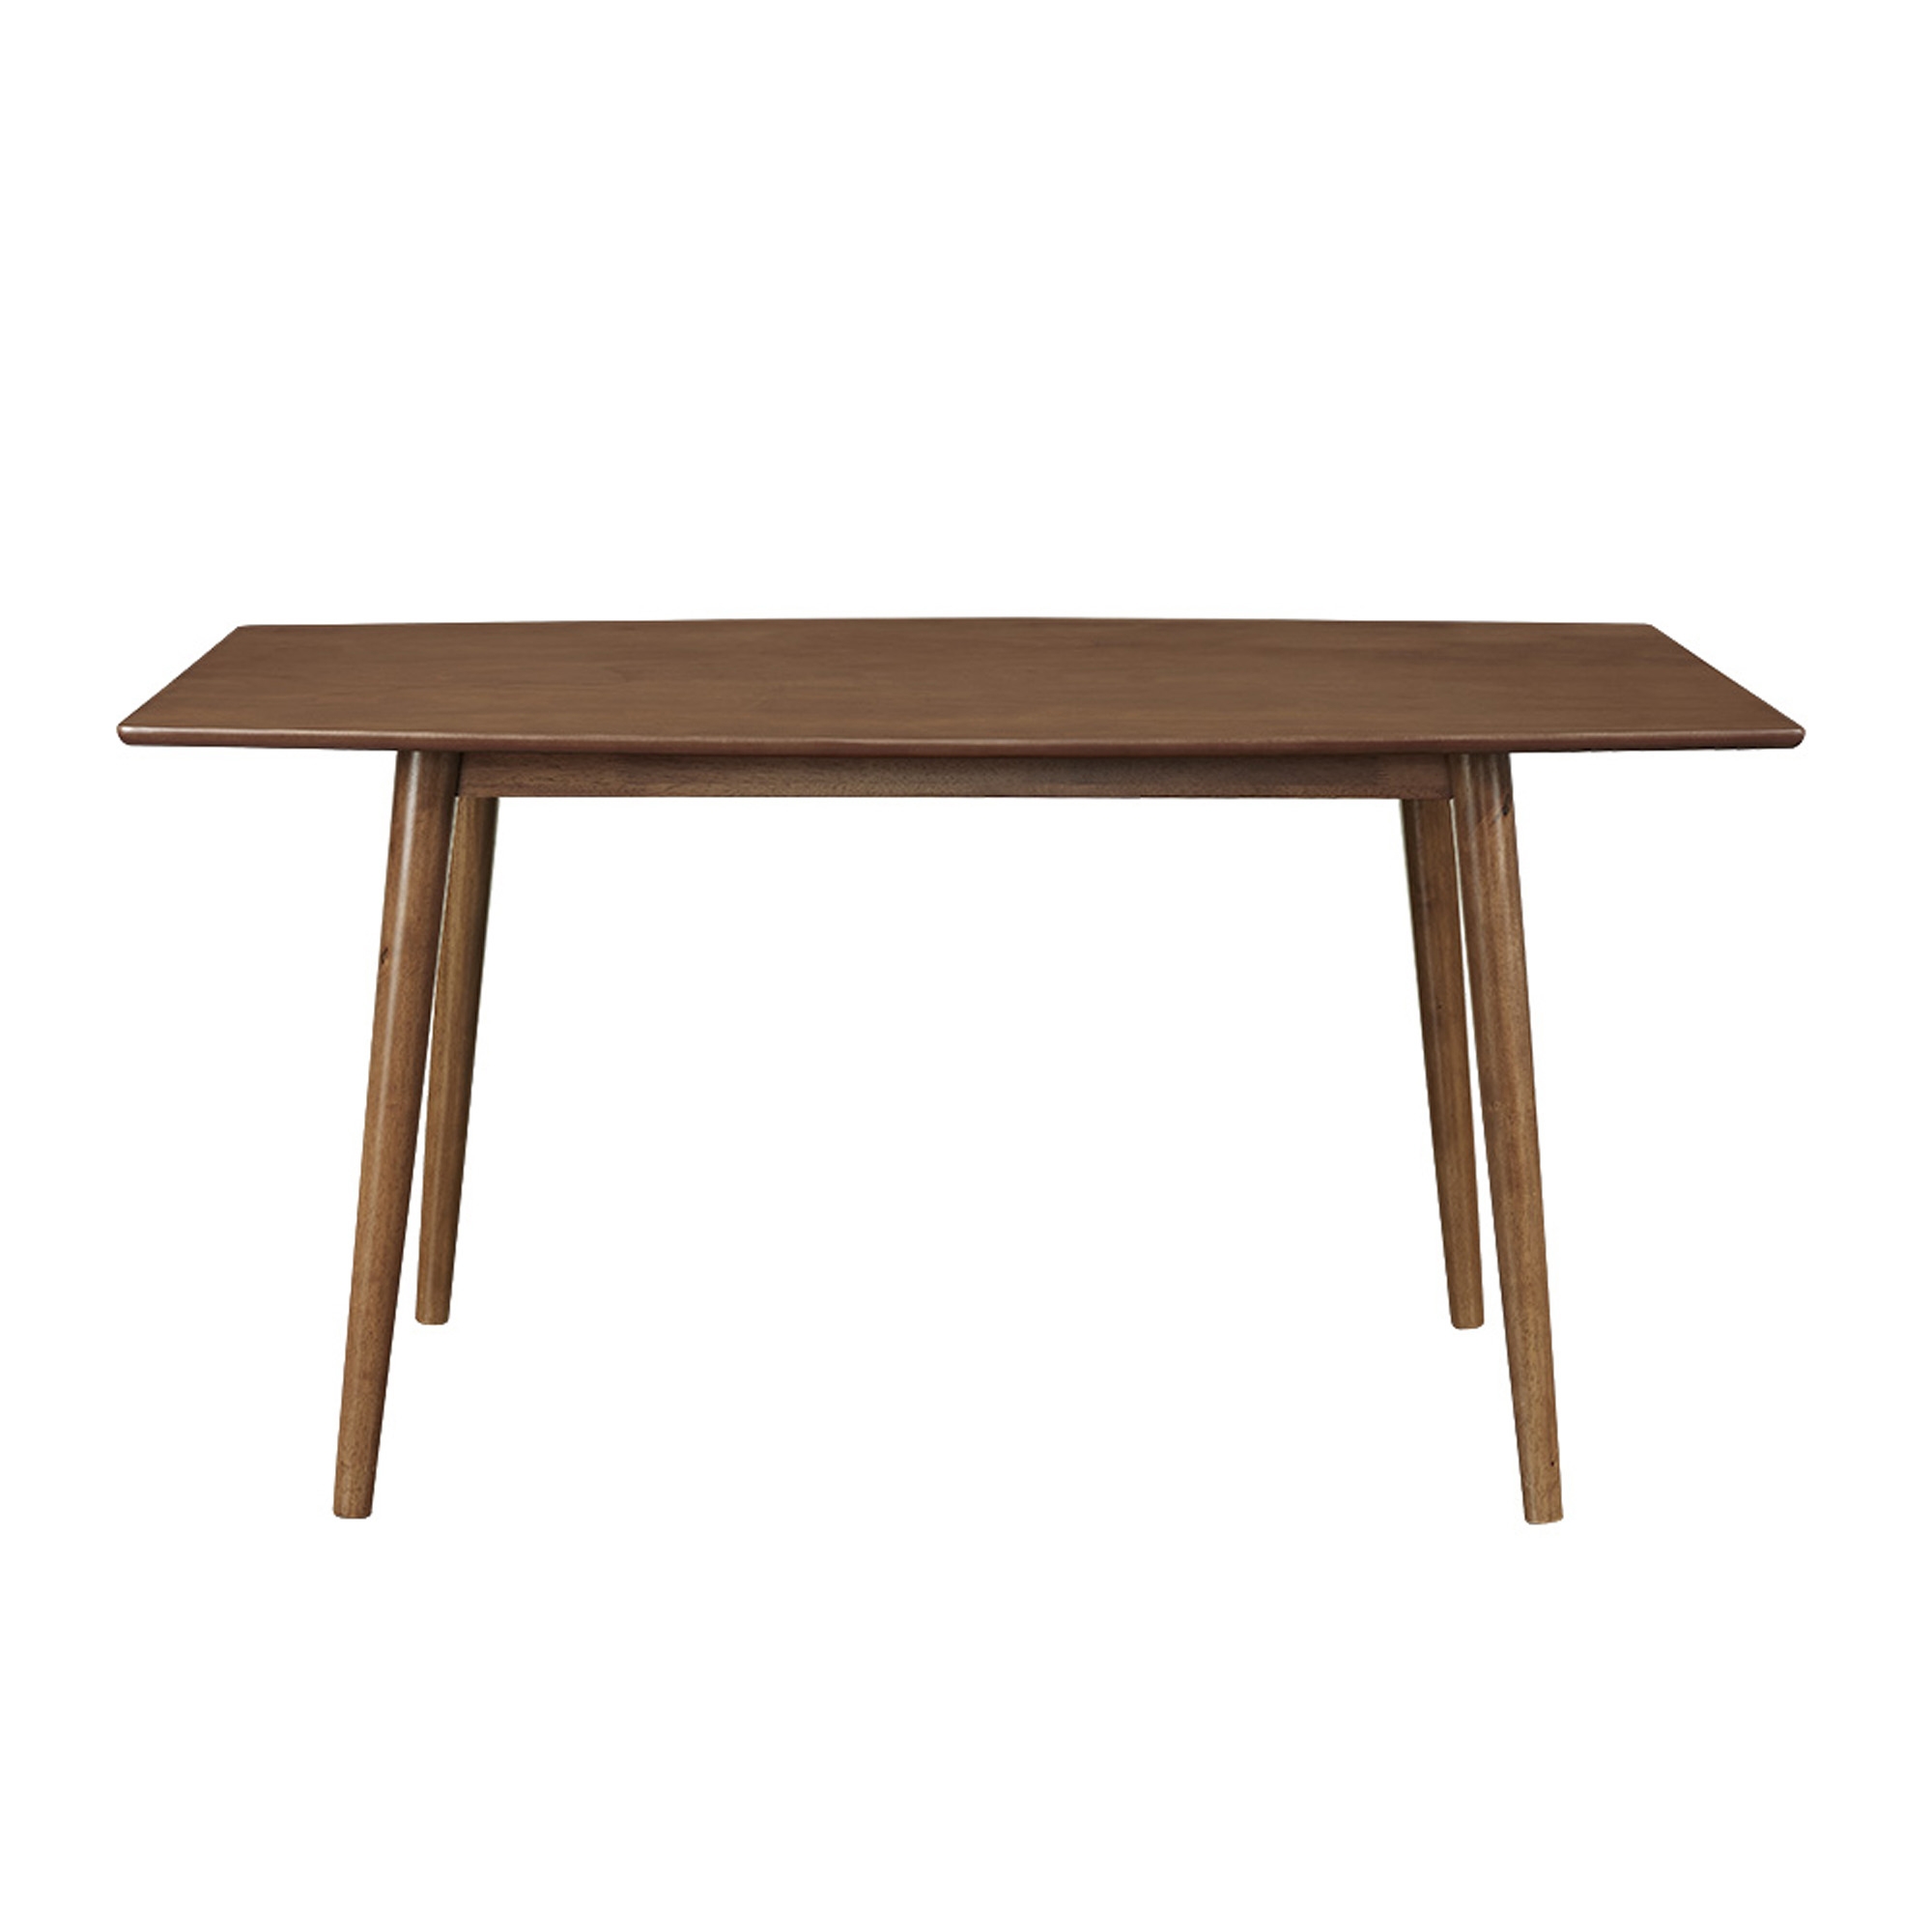 60" Mid Century Wood Dining Table - Acorn - Image 0